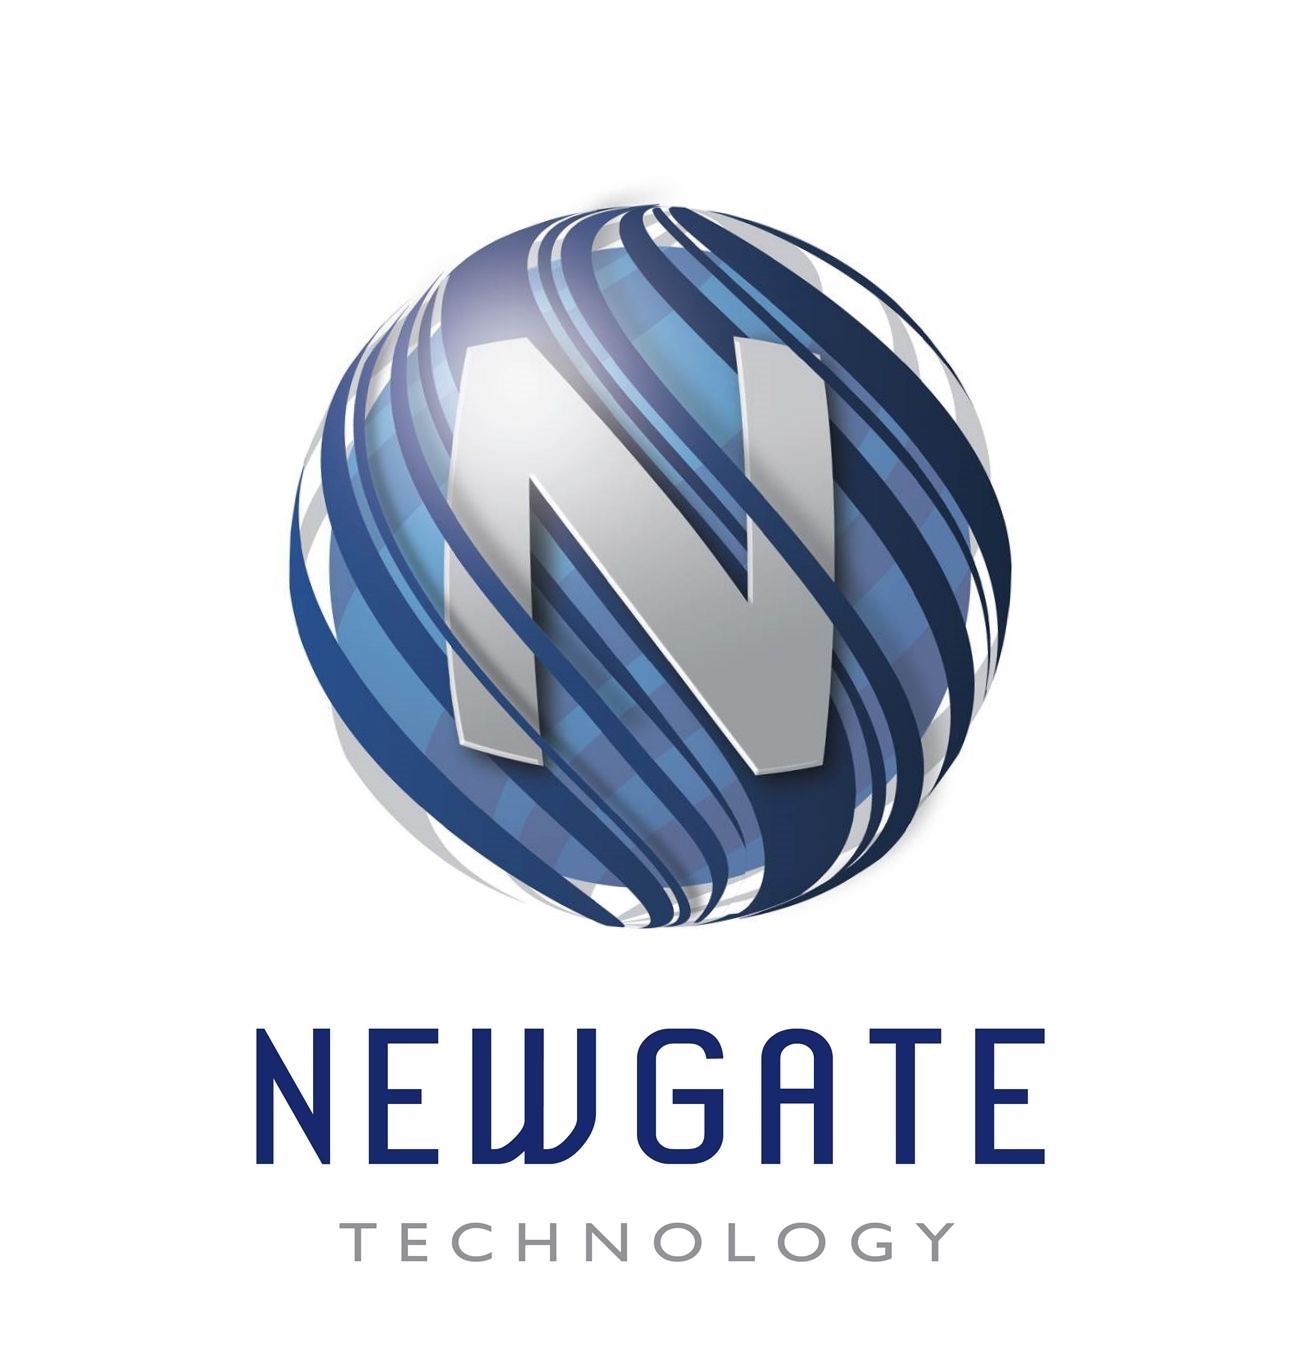 Newgate Technology Ltd